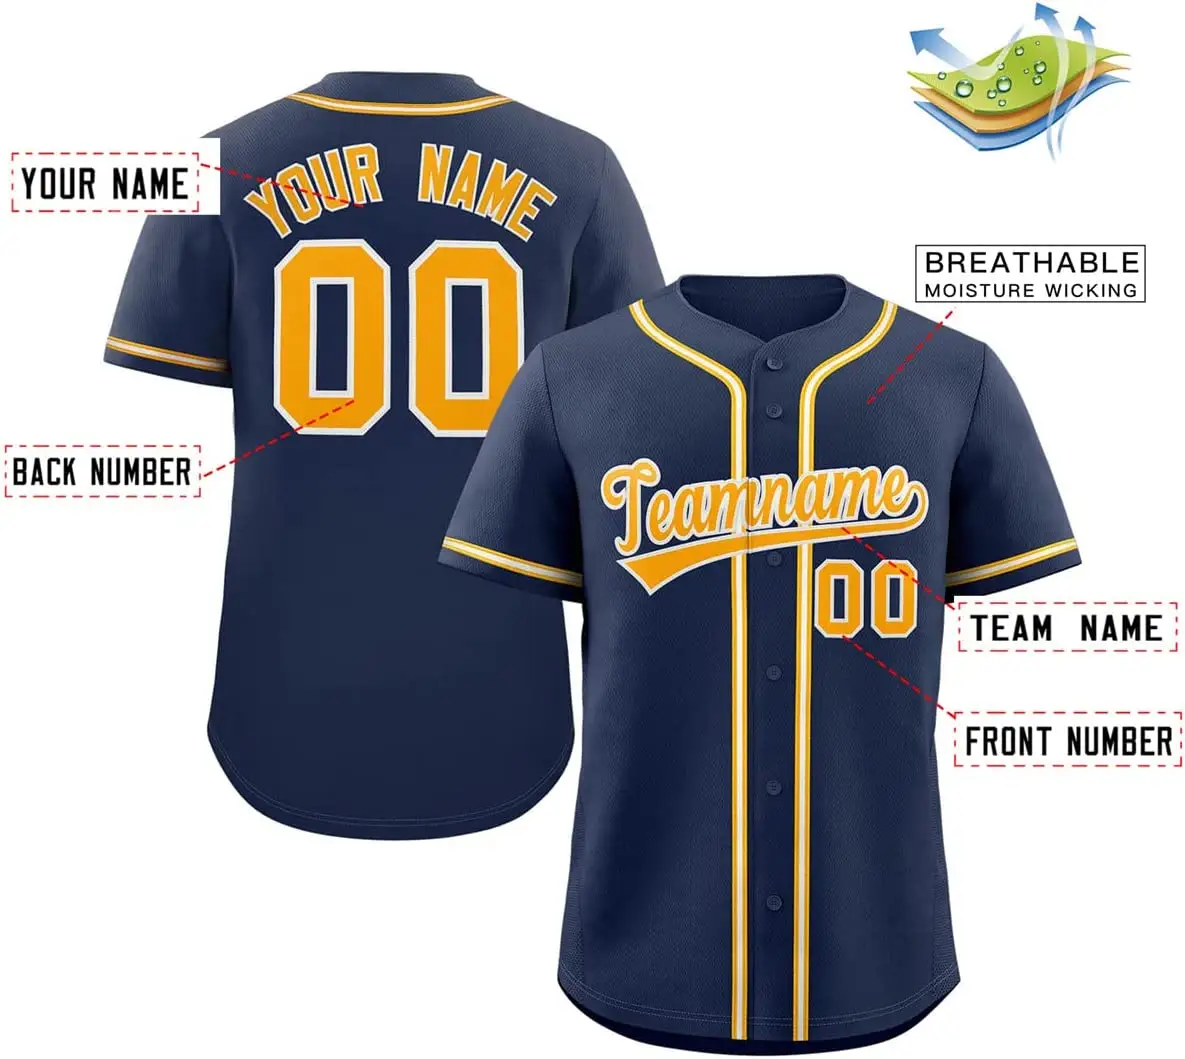 Kaus Bisbol Kustom Bercetak Sesuai Selera Seragam Olahraga untuk Pria Wanita Anak Laki-laki